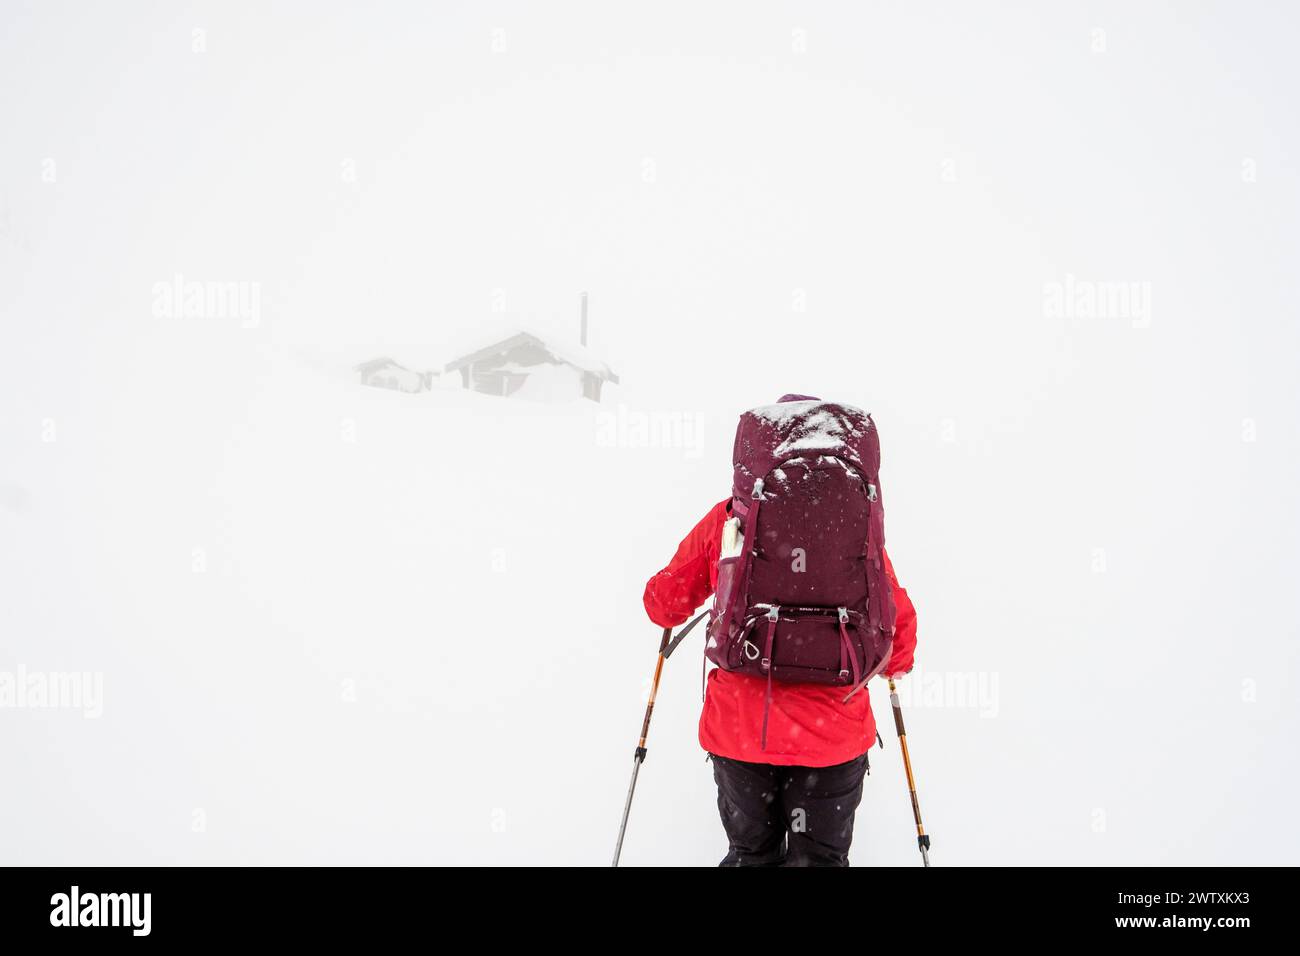 Un randonneur de ski se dirigeant vers une cabane de montagne en mauvaise visibilité, Jotunheim, Norvège Banque D'Images